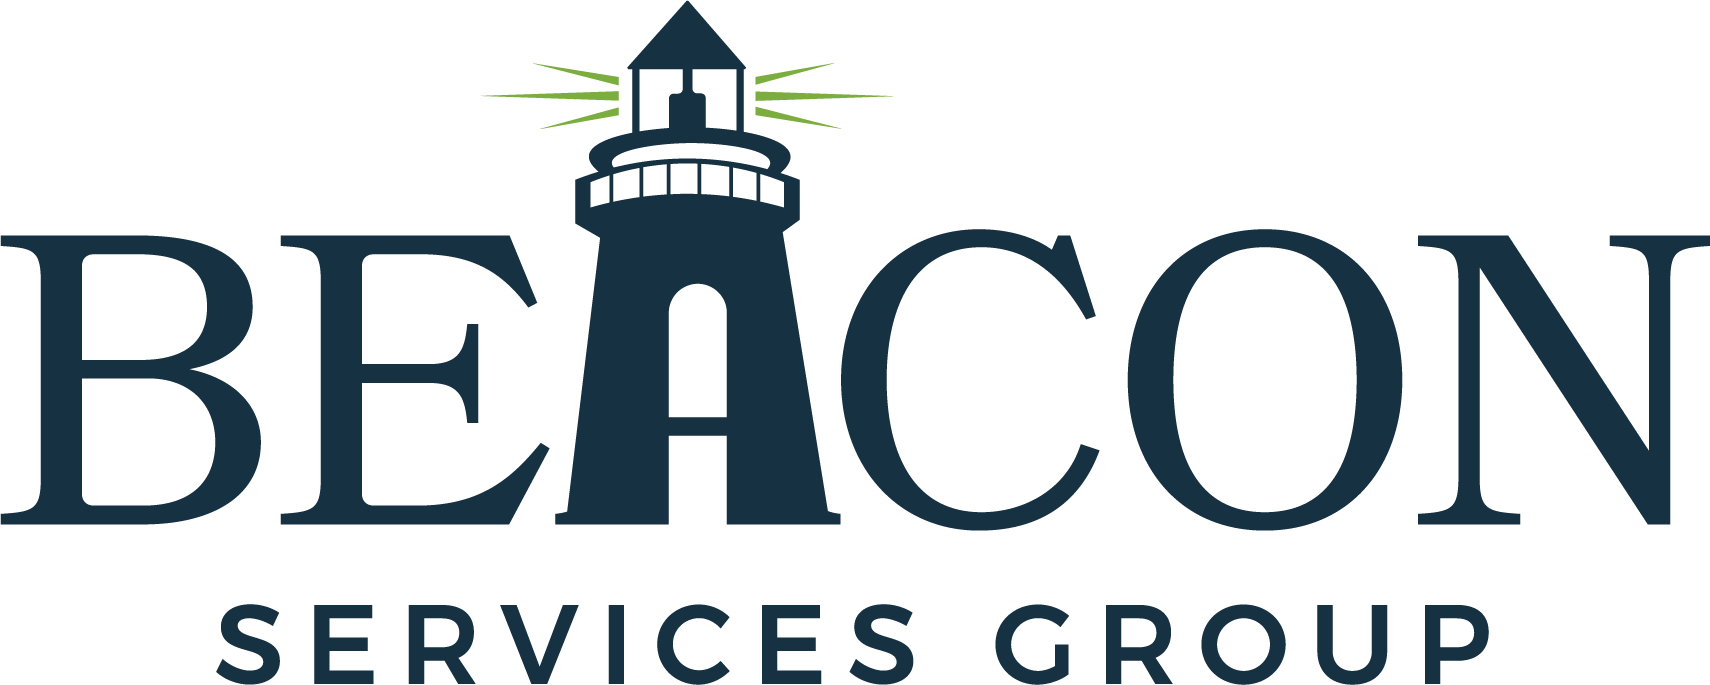 Beacon Services Group